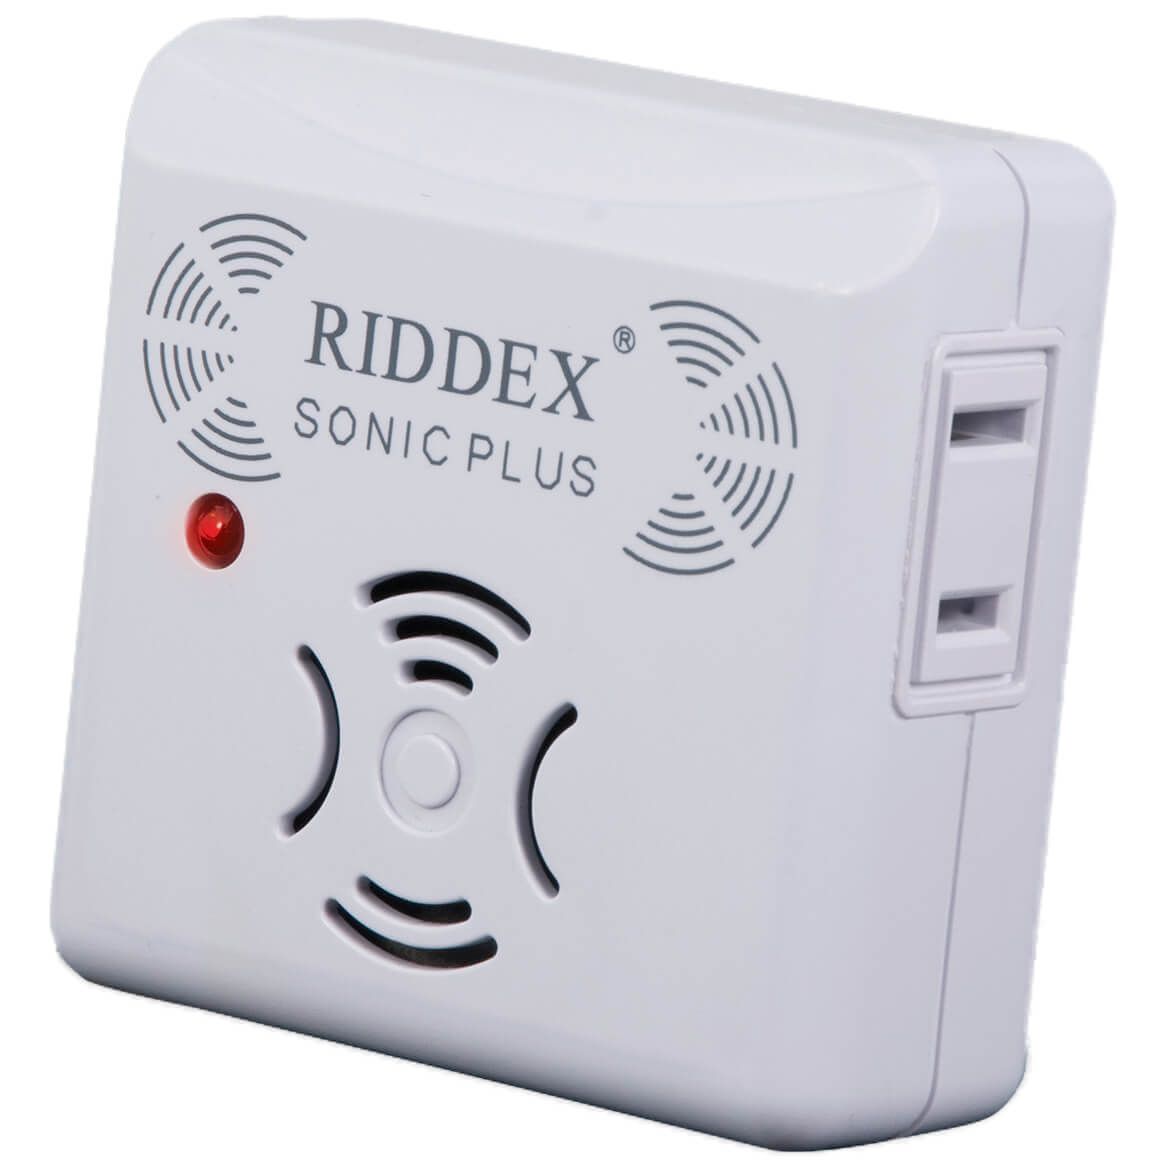 Riddex Sonic Plus S/3 + '-' + 370267